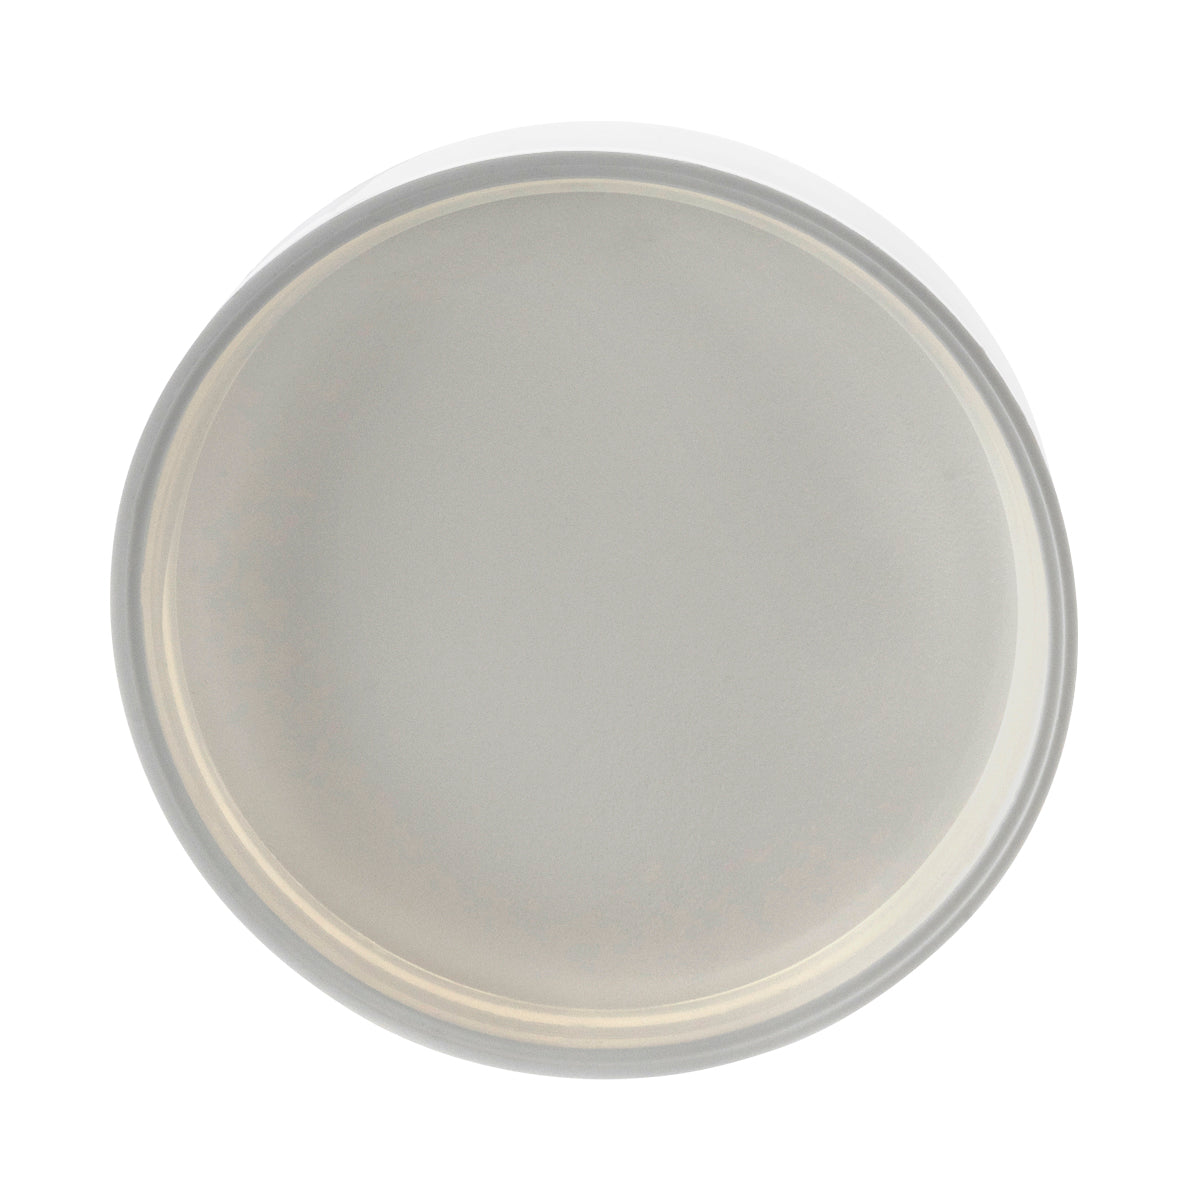 Plastic Cap | Smooth Plastic Cap | 89mm - Gloss White Cap Biohazard Inc   